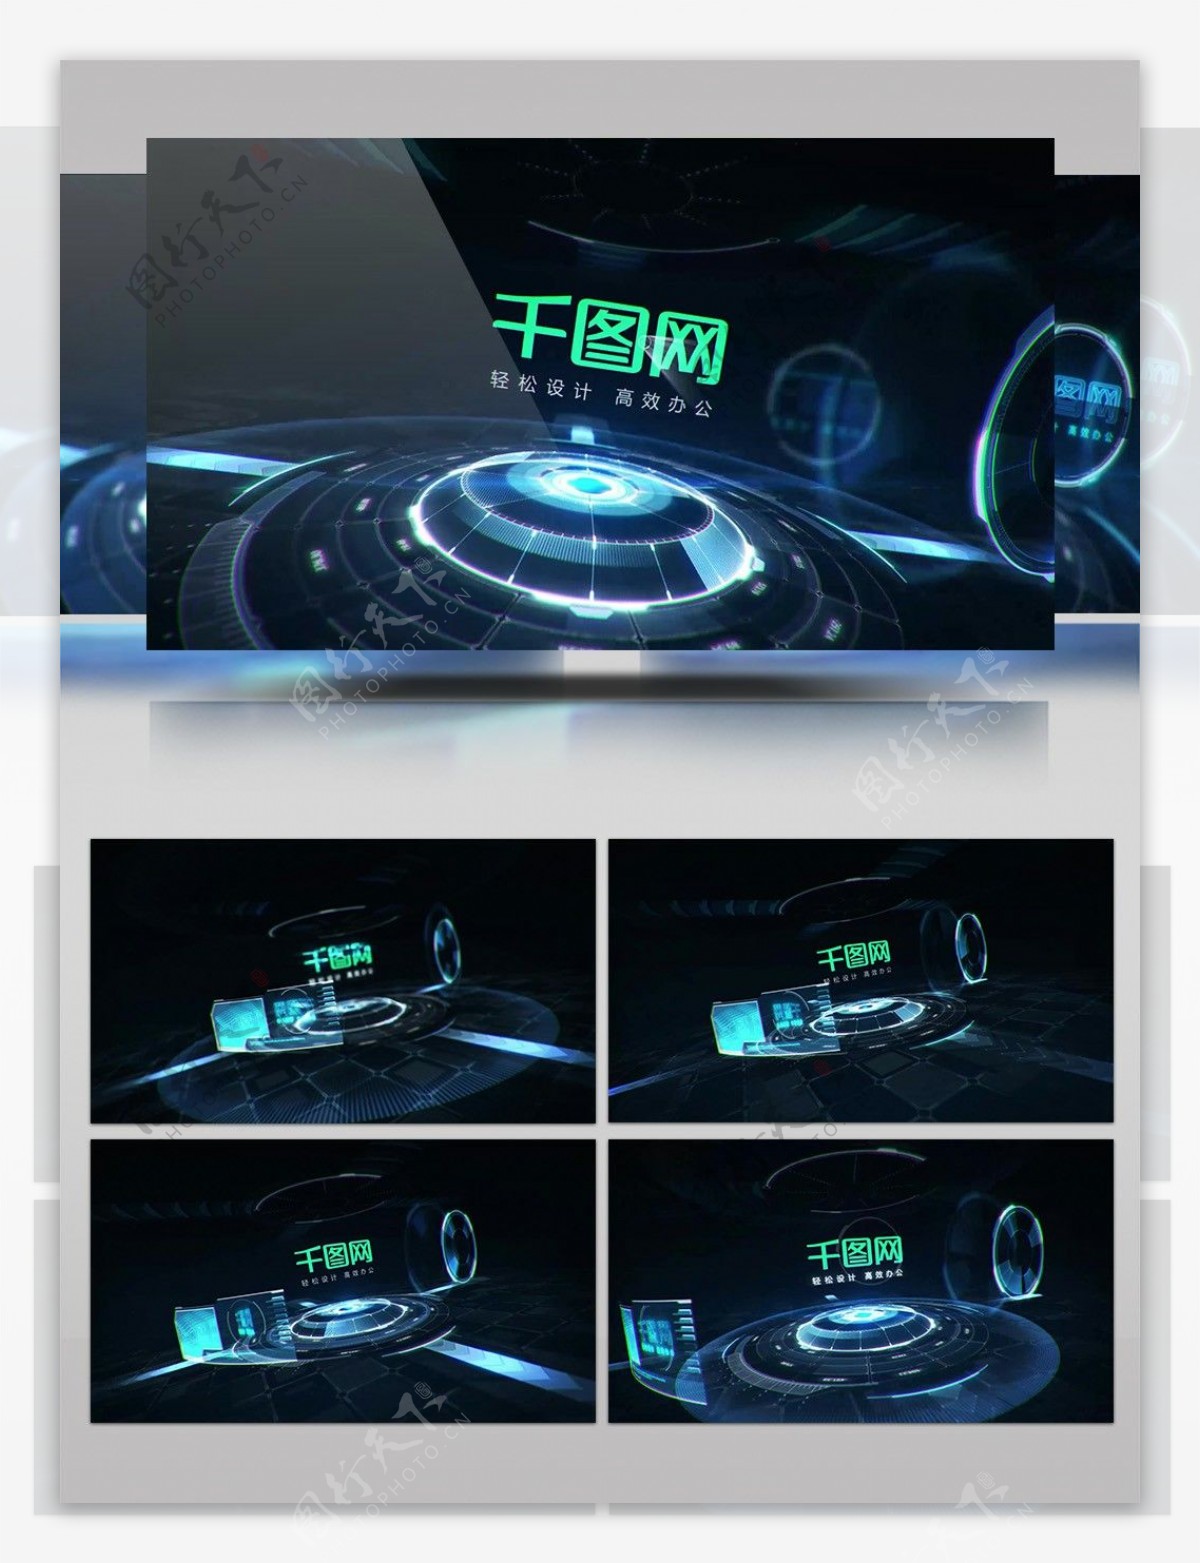 高科技科幻界面动画标志展示AE模板